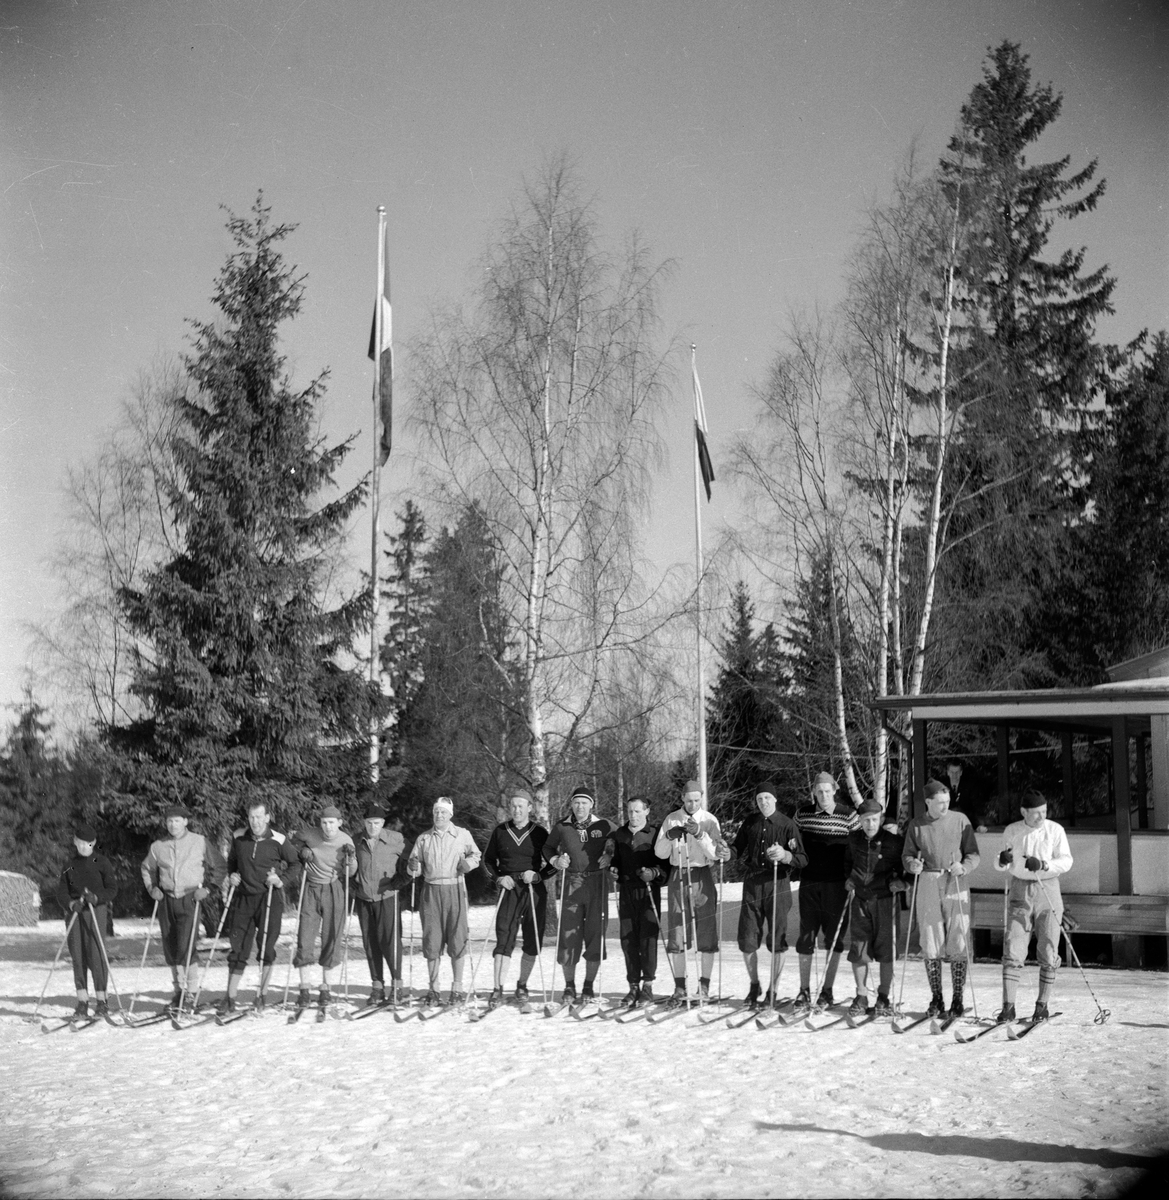 Deltagare i en skidtävling, troligtvis på Öxnehaga i Huskvarna. Bertil Björkman (3), Lennart Tivelius (8), Tollbert Engberg (9), Evert Apelqvist (10), Karl-Gustav Hellström (11), Forsberg (12), Georg Andersson (15).